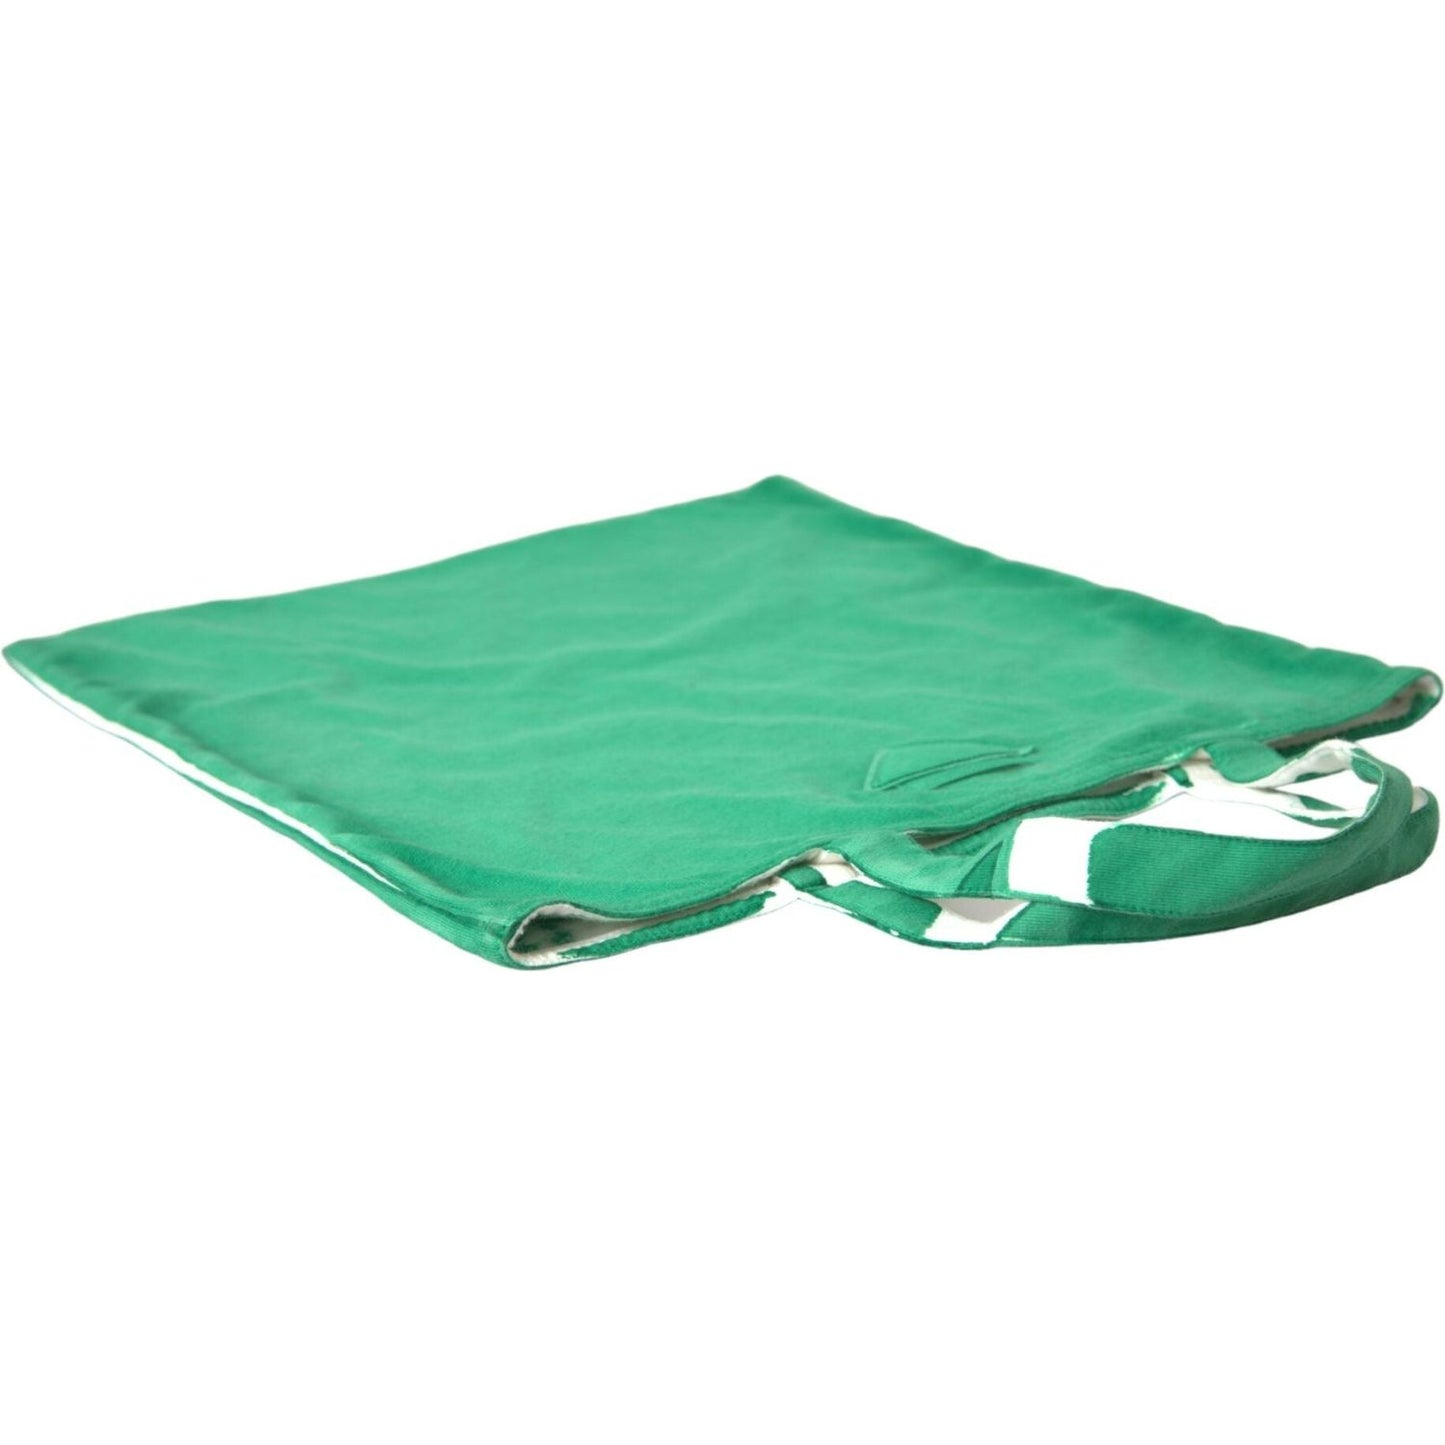 Prada Elegant Green Fabric Tote Bag elegant-green-fabric-tote-bag